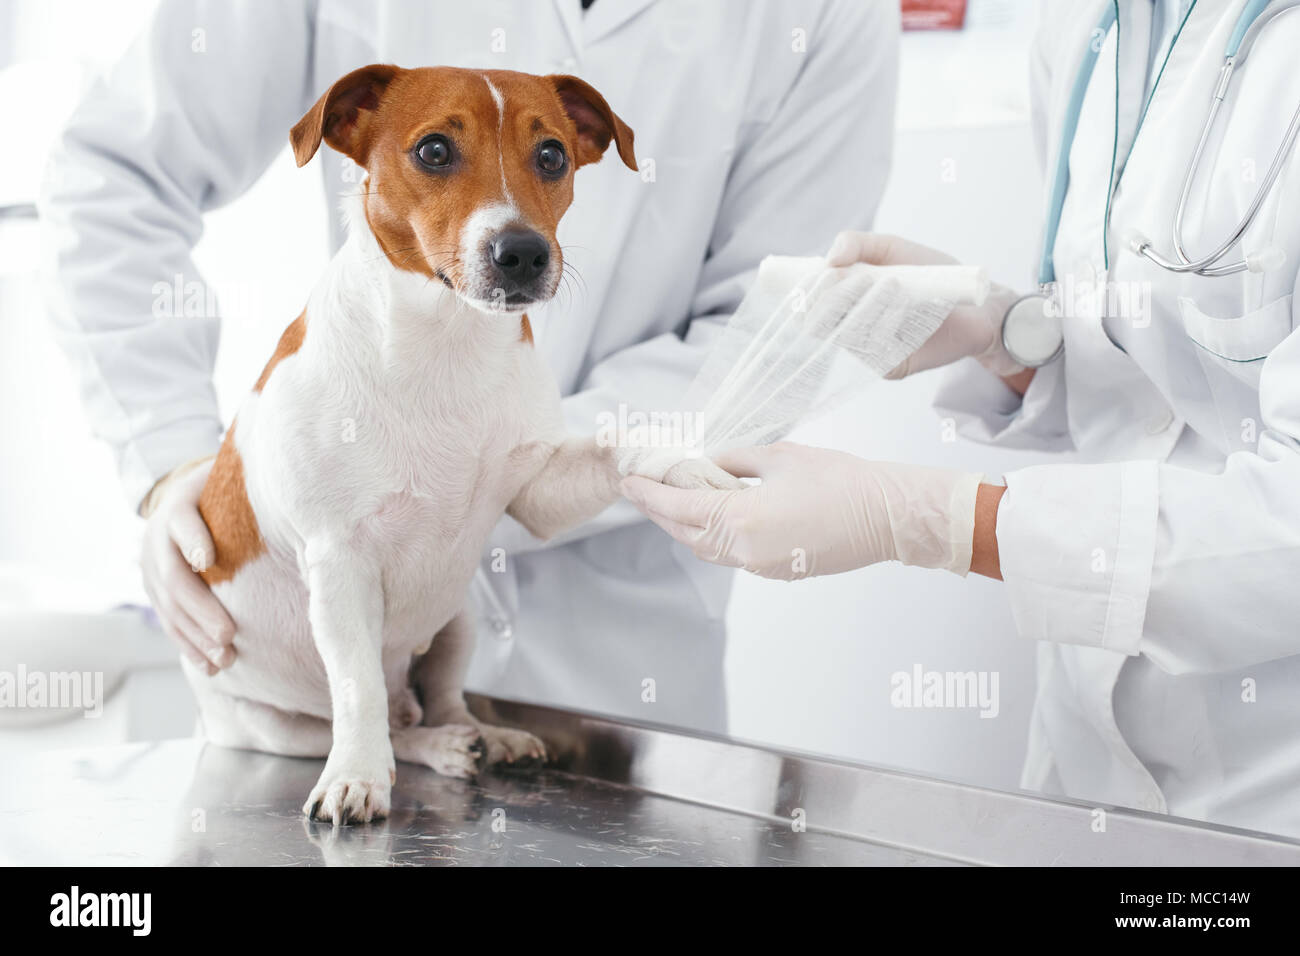 Fracture de la patte de chien, imposer un plâtre blanc. Concept clinique vétérinaire. Services d'un médecin pour les animaux, la santé et le traitement des animaux domestiques Banque D'Images